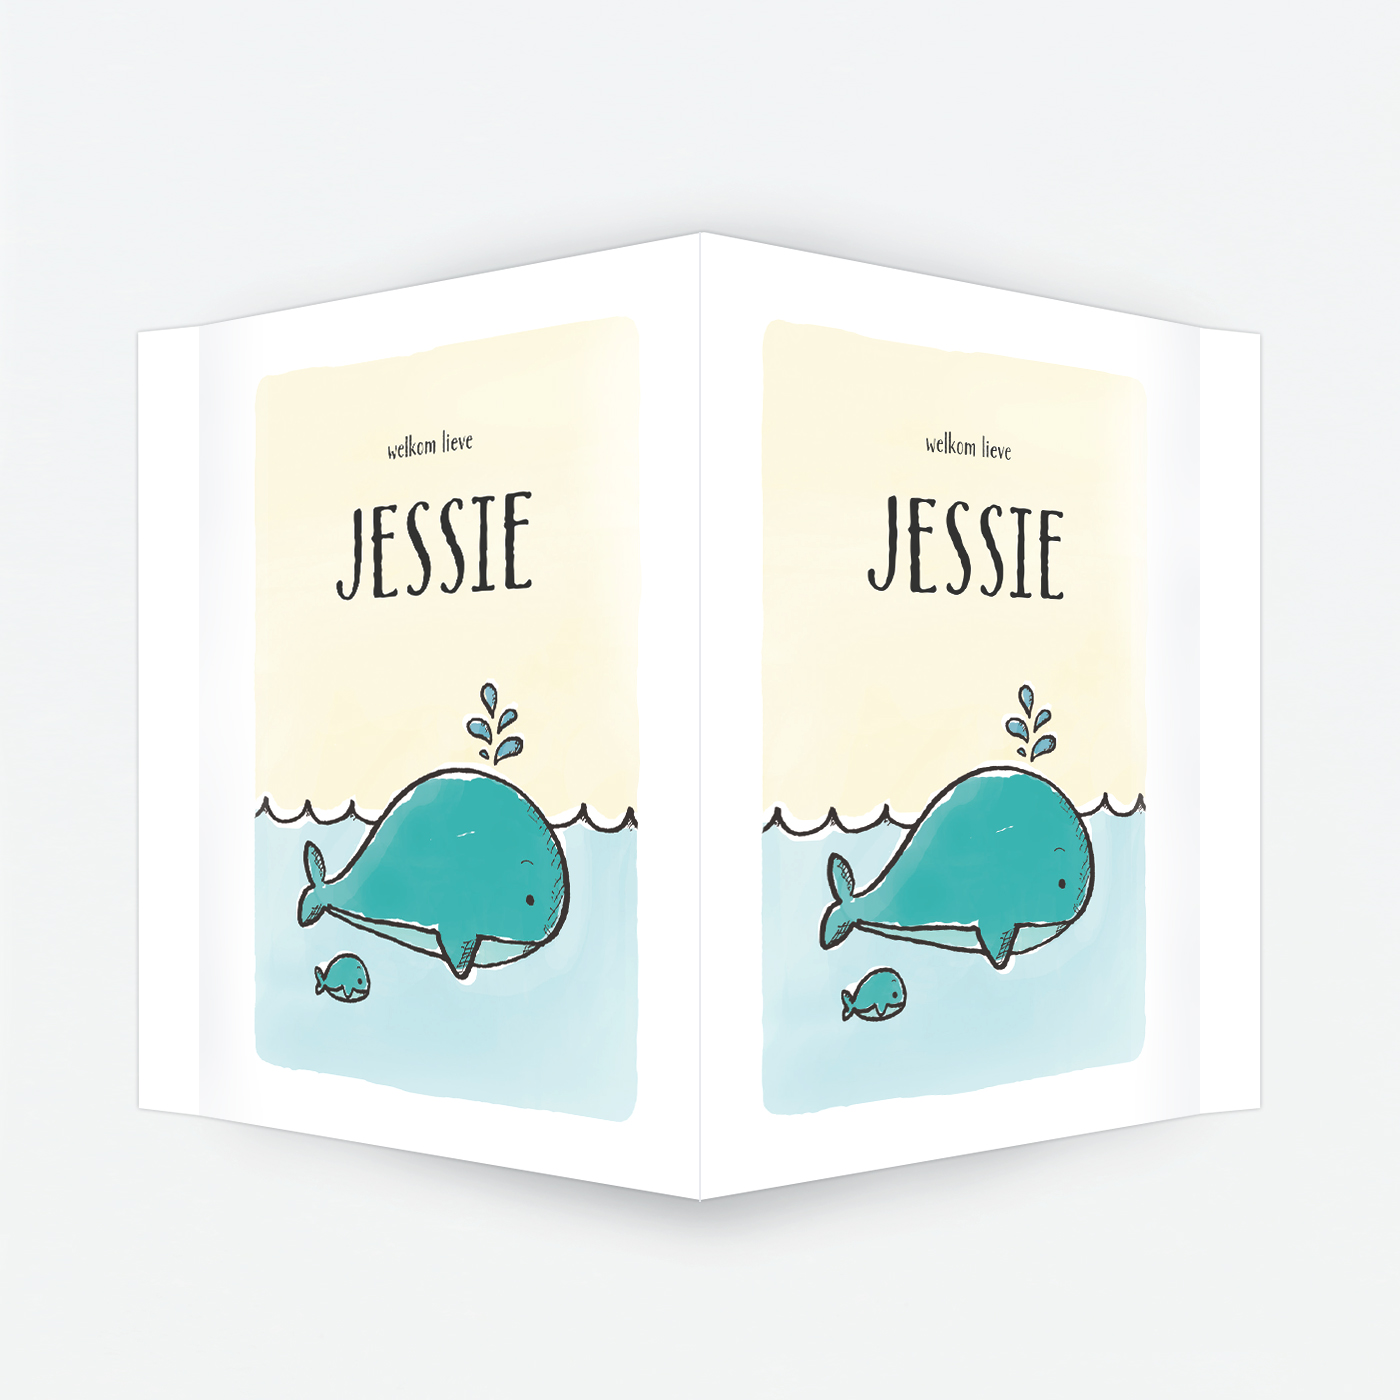 geboortebord van Kikker & Prins - op basis van het geboortekaartje Jessie met walvis